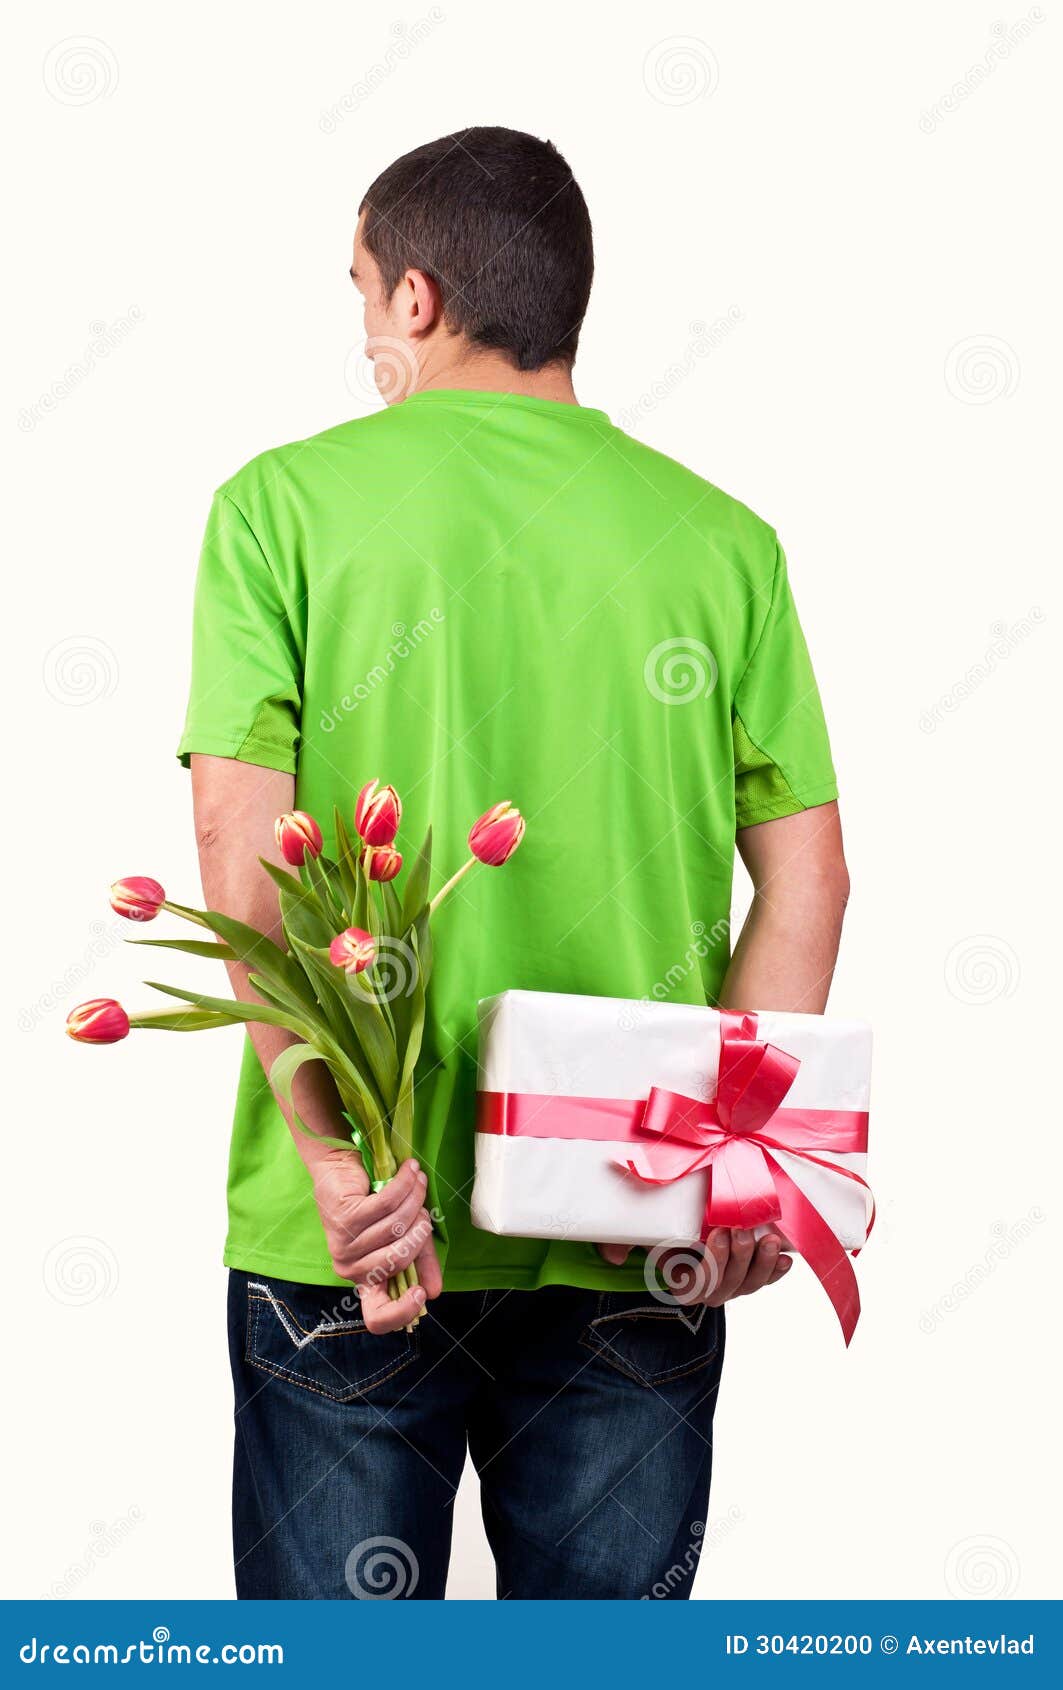 Mannederlagtulpan blommar och gåvaasken bak hans baksida